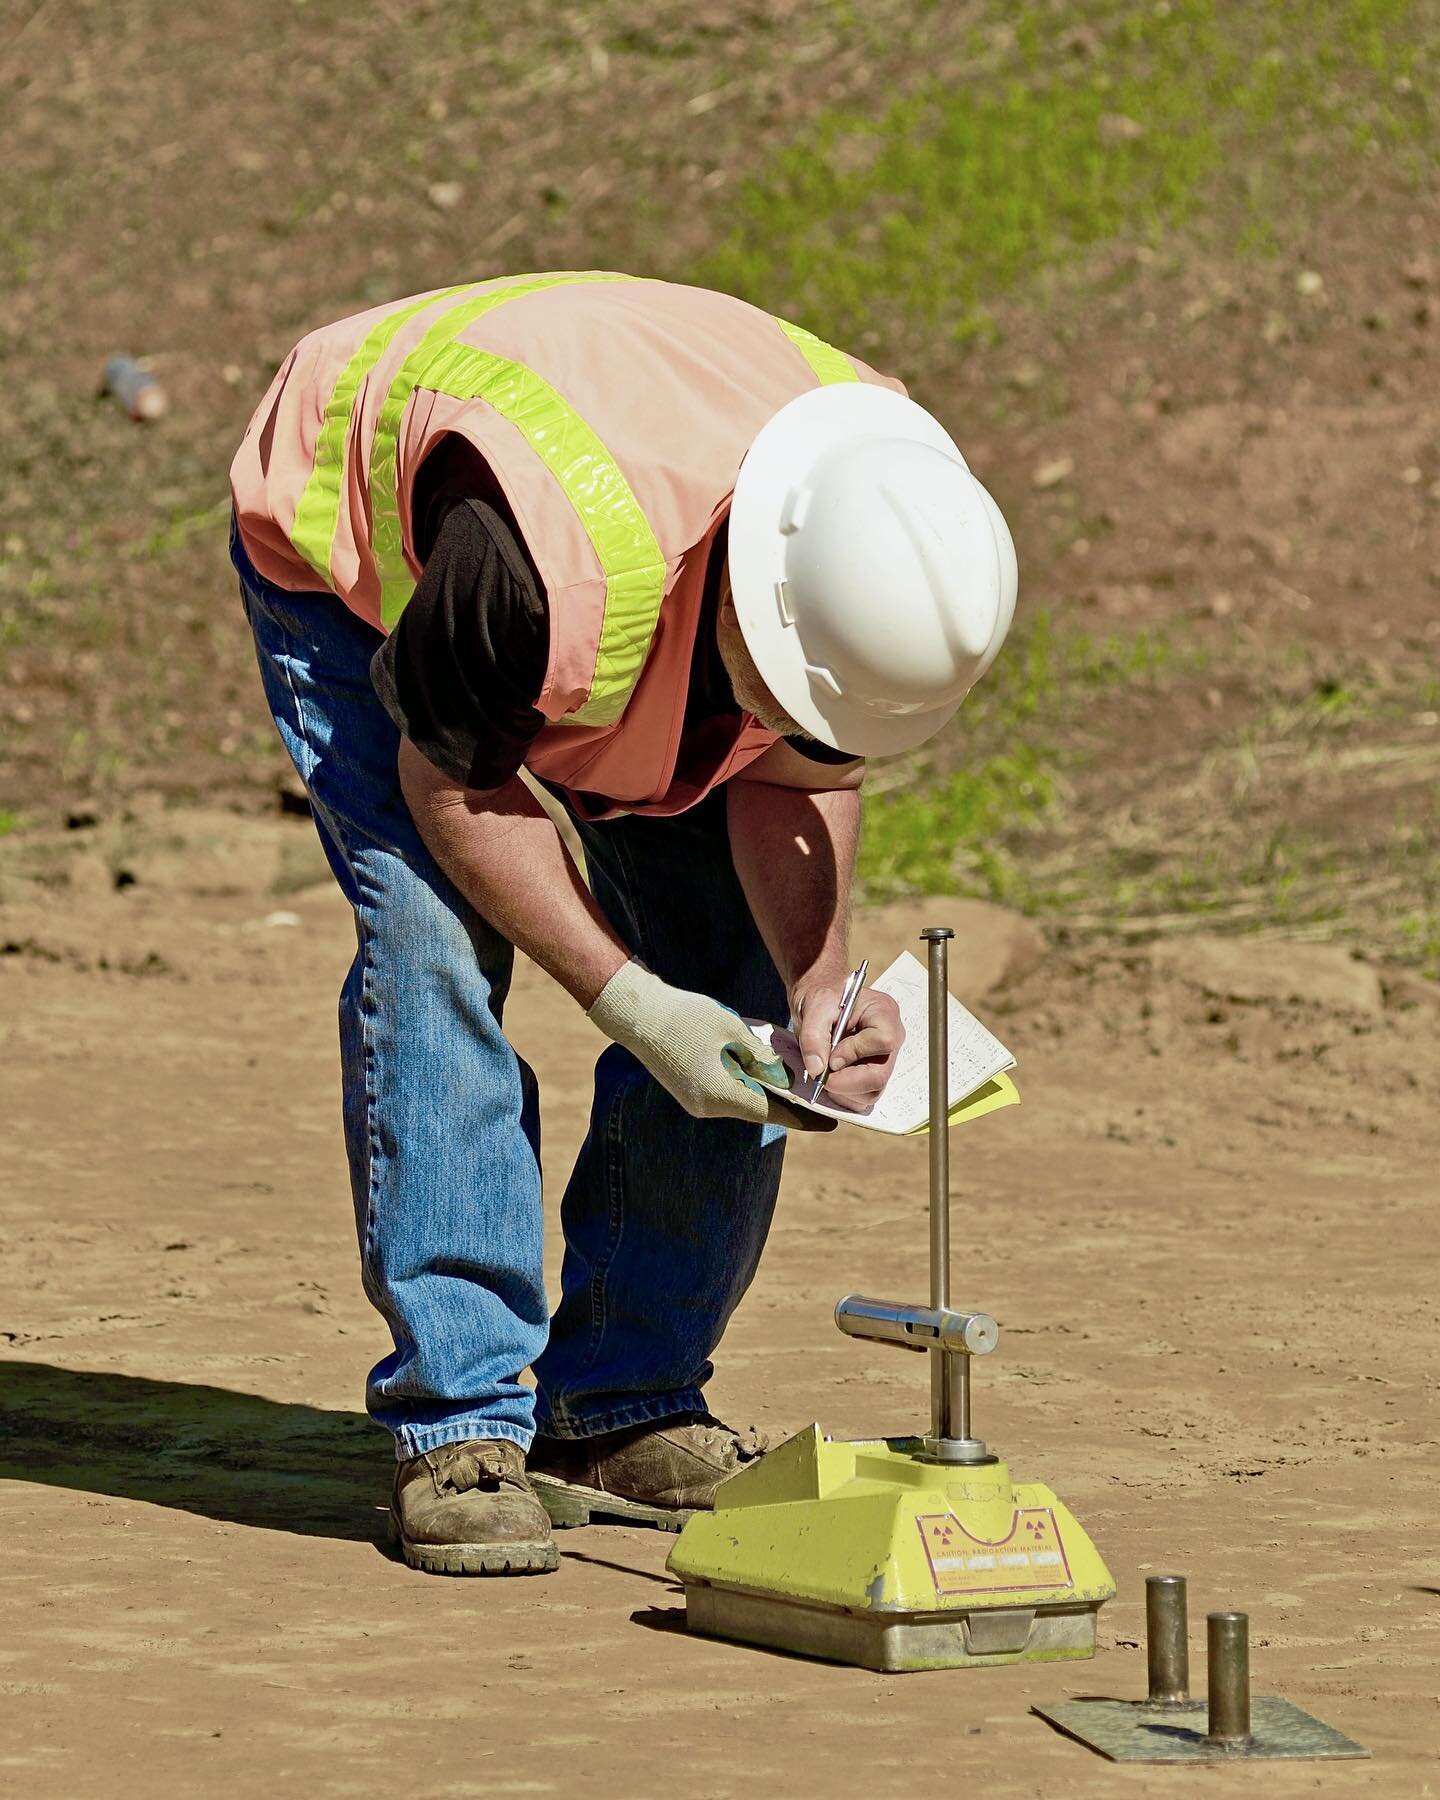 ✔️Coffey使用一种创新的核密度仪测量土壤密度，比传统的砂锥方法快20倍。核密度仪测量穿过土壤的放射性光子源。然后，通过一个复杂的等式